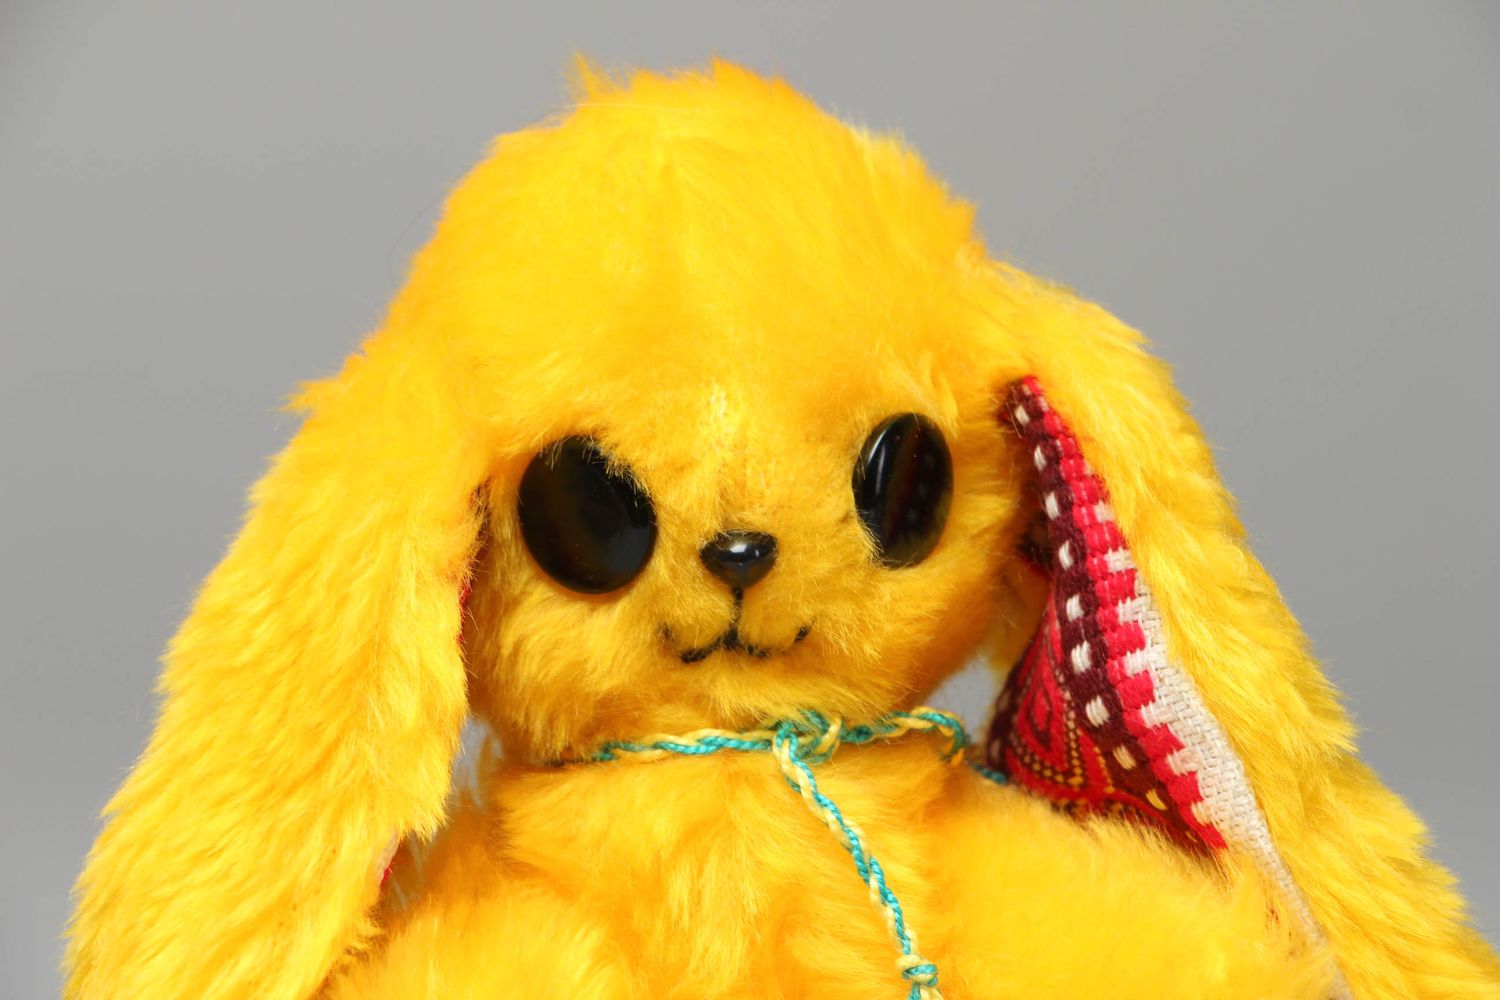 Designer toy Yellow Bunny photo 2